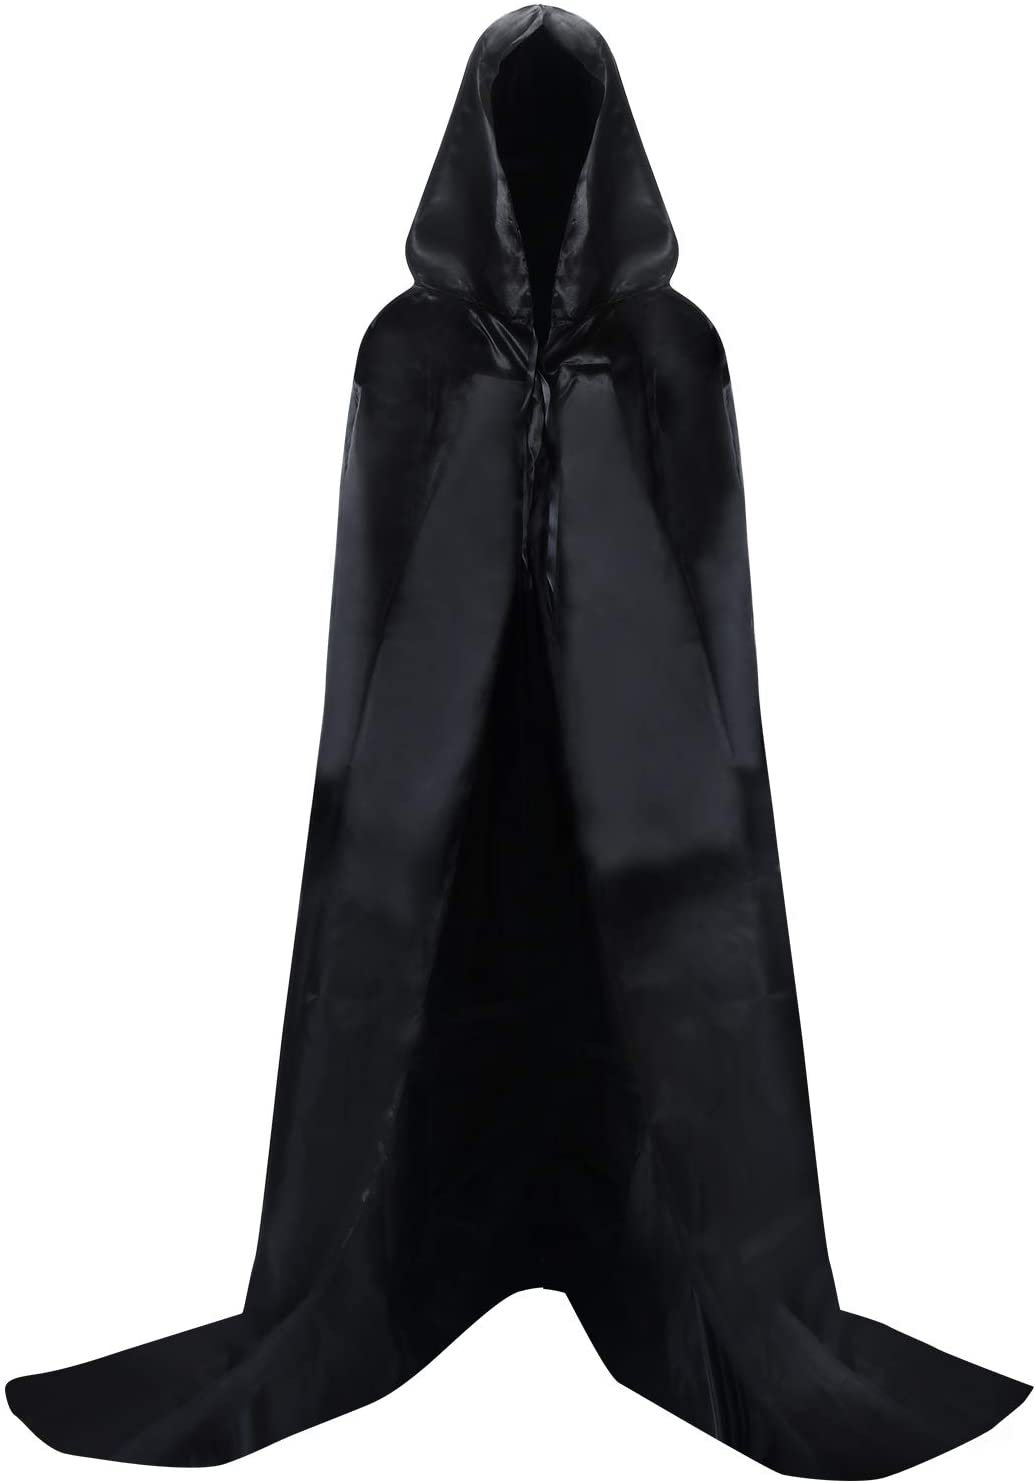 hoyuwak Black Cloak with Hood Halloween Wizard Hooded Cape Full